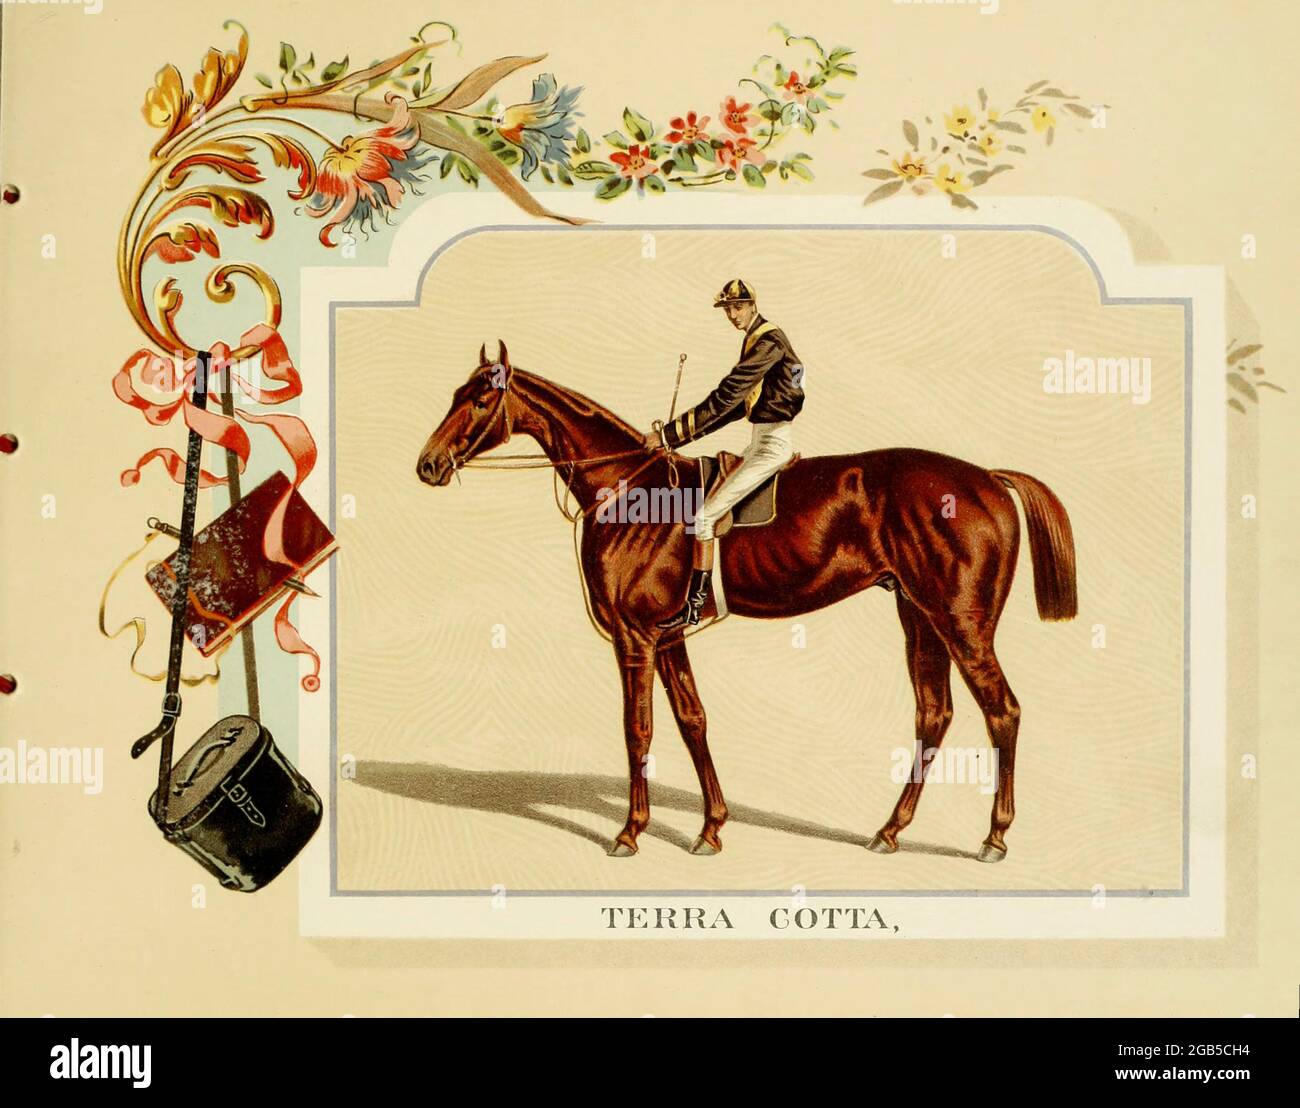 Terra Cotta fue un caballo de raza pura del ' Album of Celebred American and English running horses ' de Kinney Bros Publicado en Nuevo Tu en 1888 por Kinney Brothers para avanzar en las ventas de sus marcas de cigarrillos. Kinney Tobacco Company fue una empresa estadounidense de fabricación de cigarrillos que creó la marca de cigarrillos Sweet Caporal y la promovió con tarjetas comerciales de colección. Siendo un fabricante líder de cigarrillos del 1870-1880s, se fusionó en 1890 en la American Tobacco Company. Foto de stock